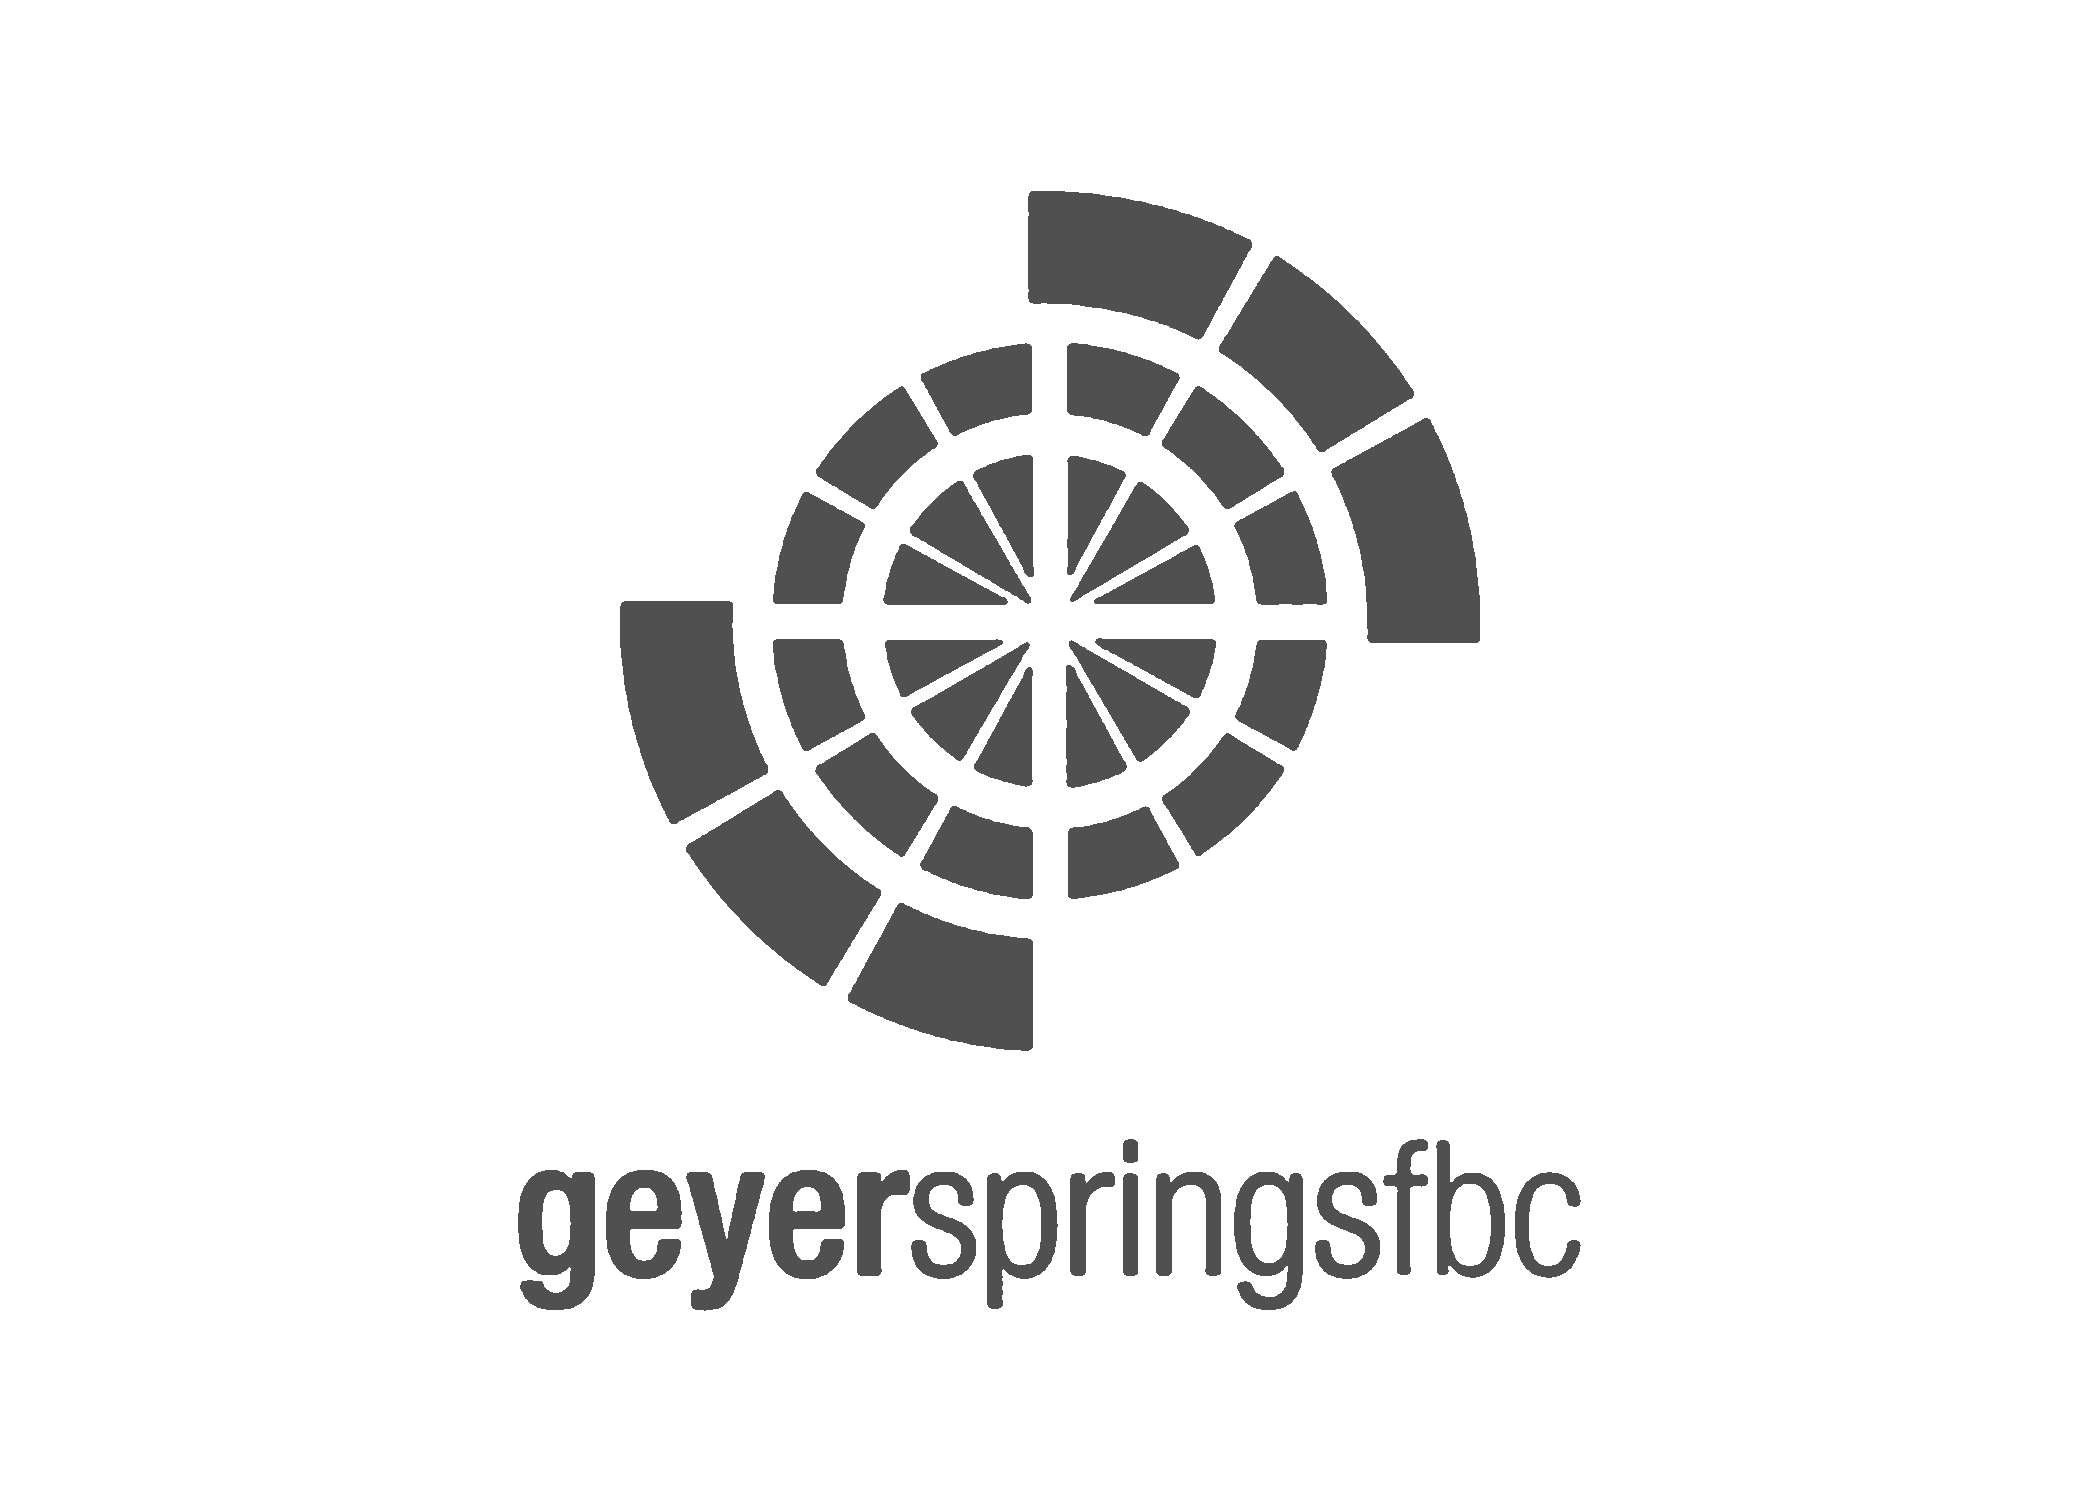 Geyerspringsfbc-BW